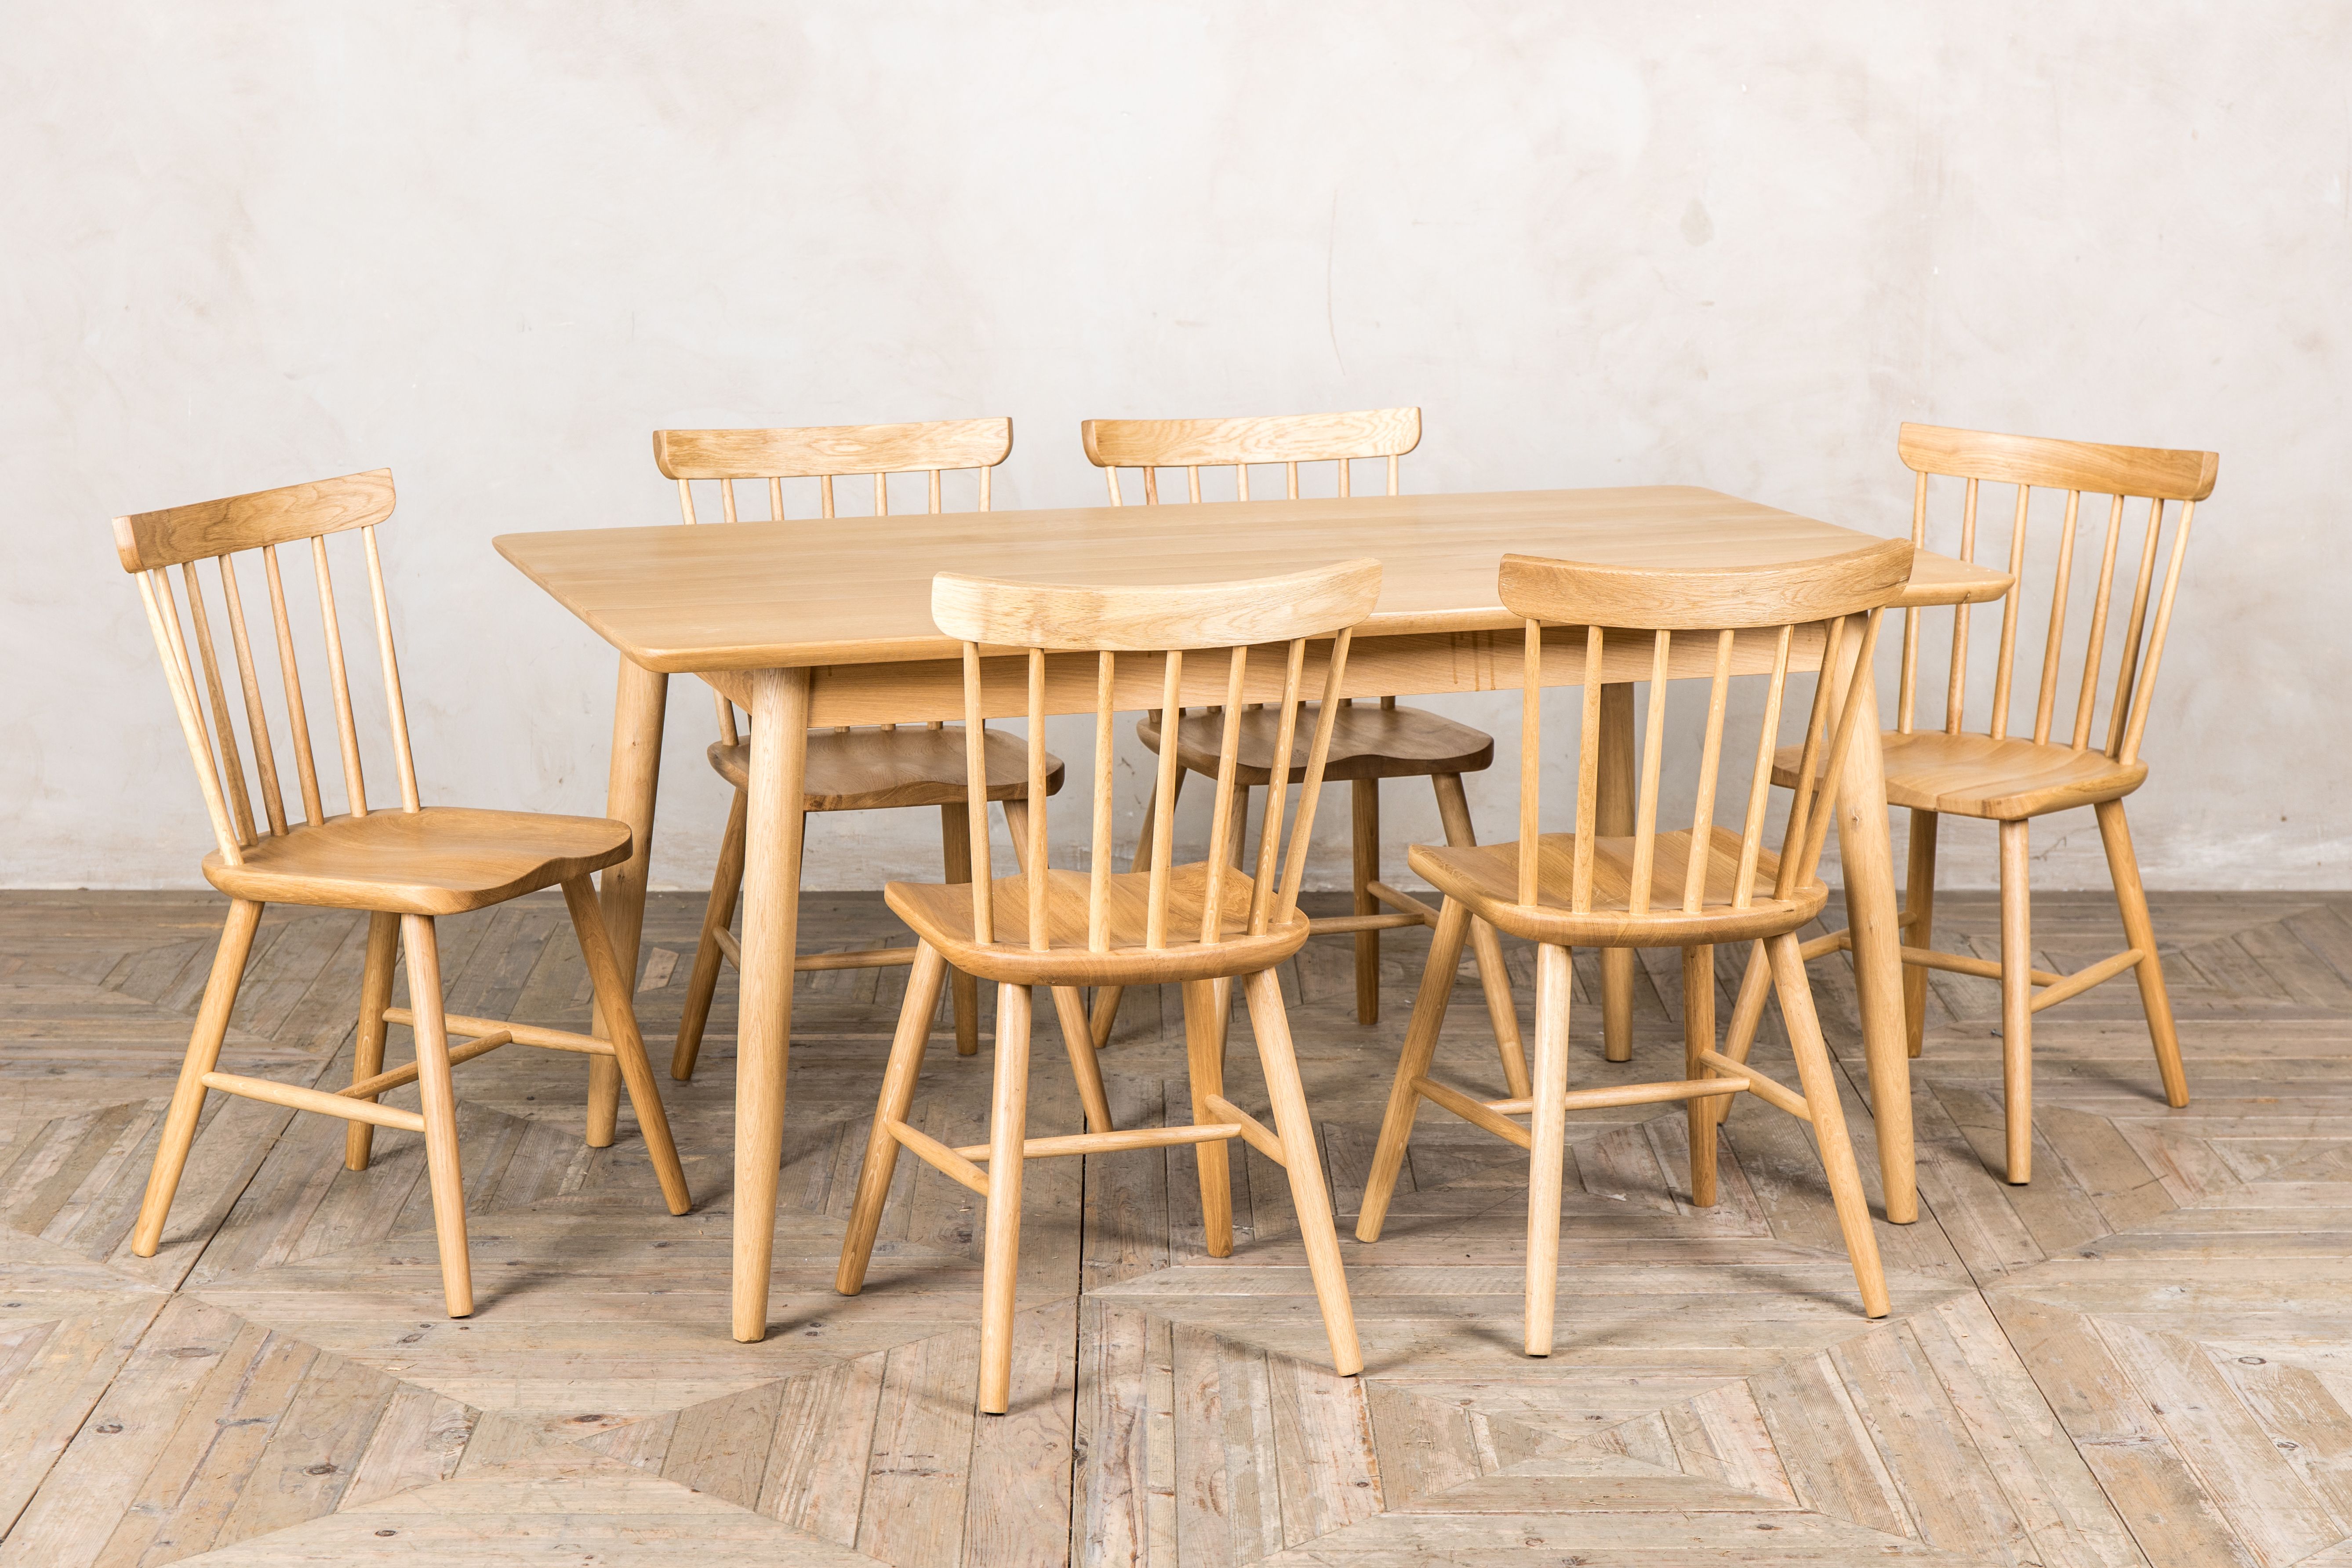 Scandinavian Style Dining Table In Oak 120cm x 70cm